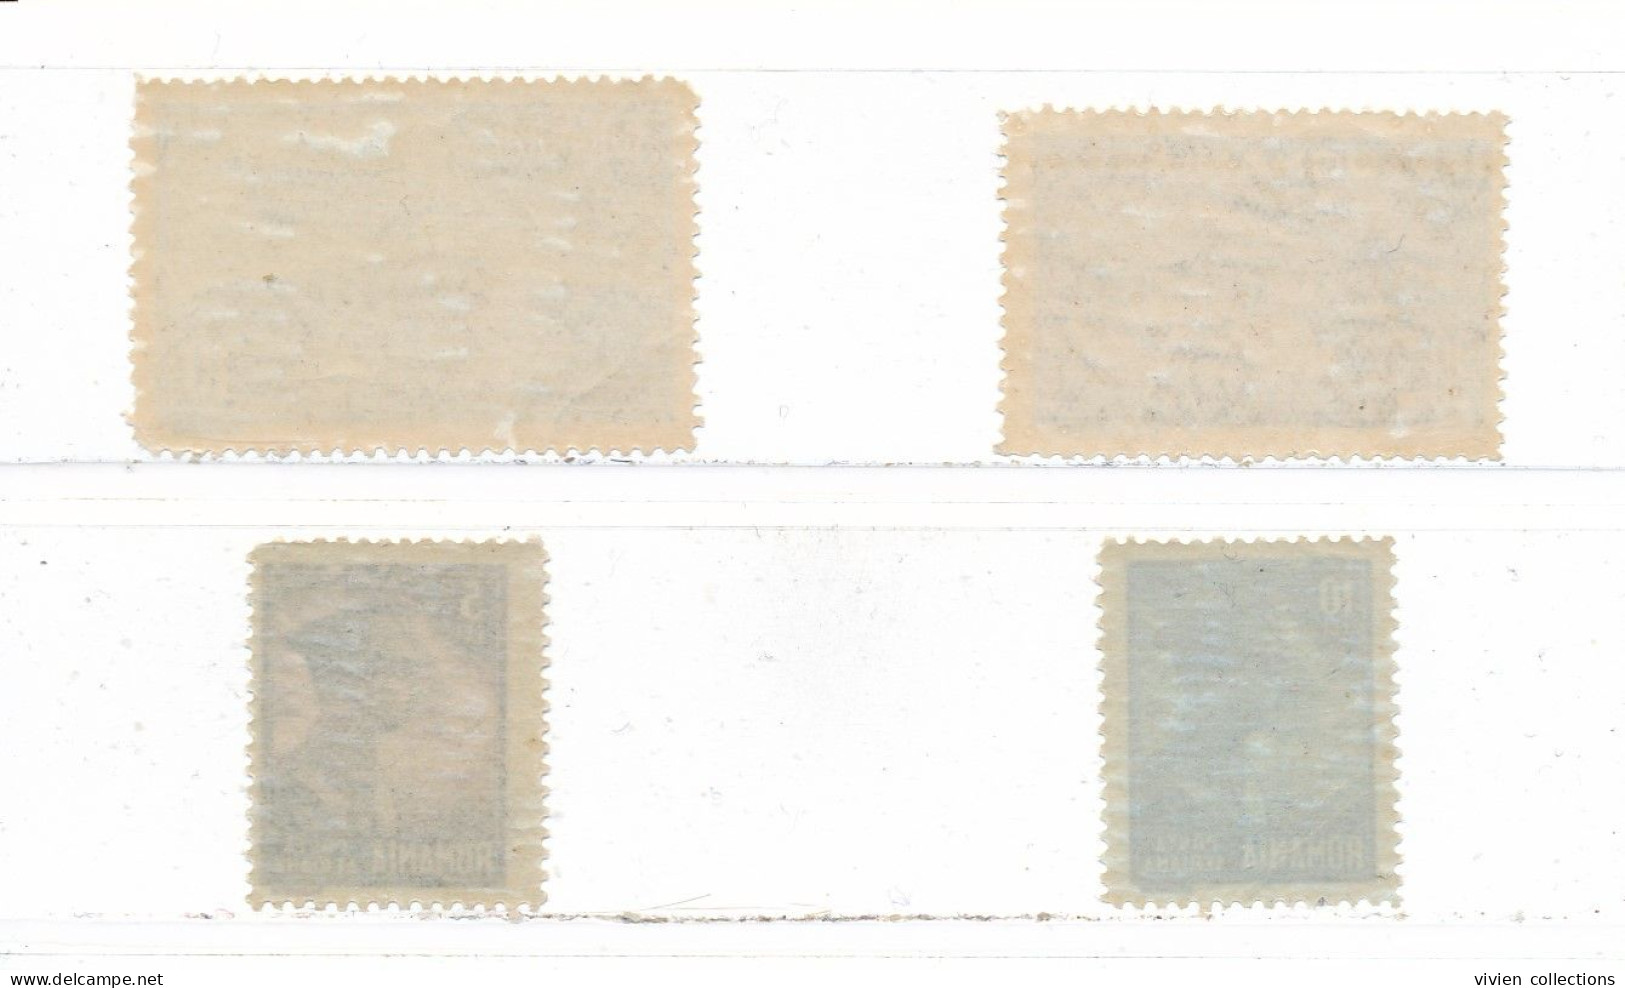 Roumanie Lot Timbres De Poste Aérienne PA N° 9/10 Et 17/18 Neufs ** (petits Défauts De Gomme) - Unused Stamps